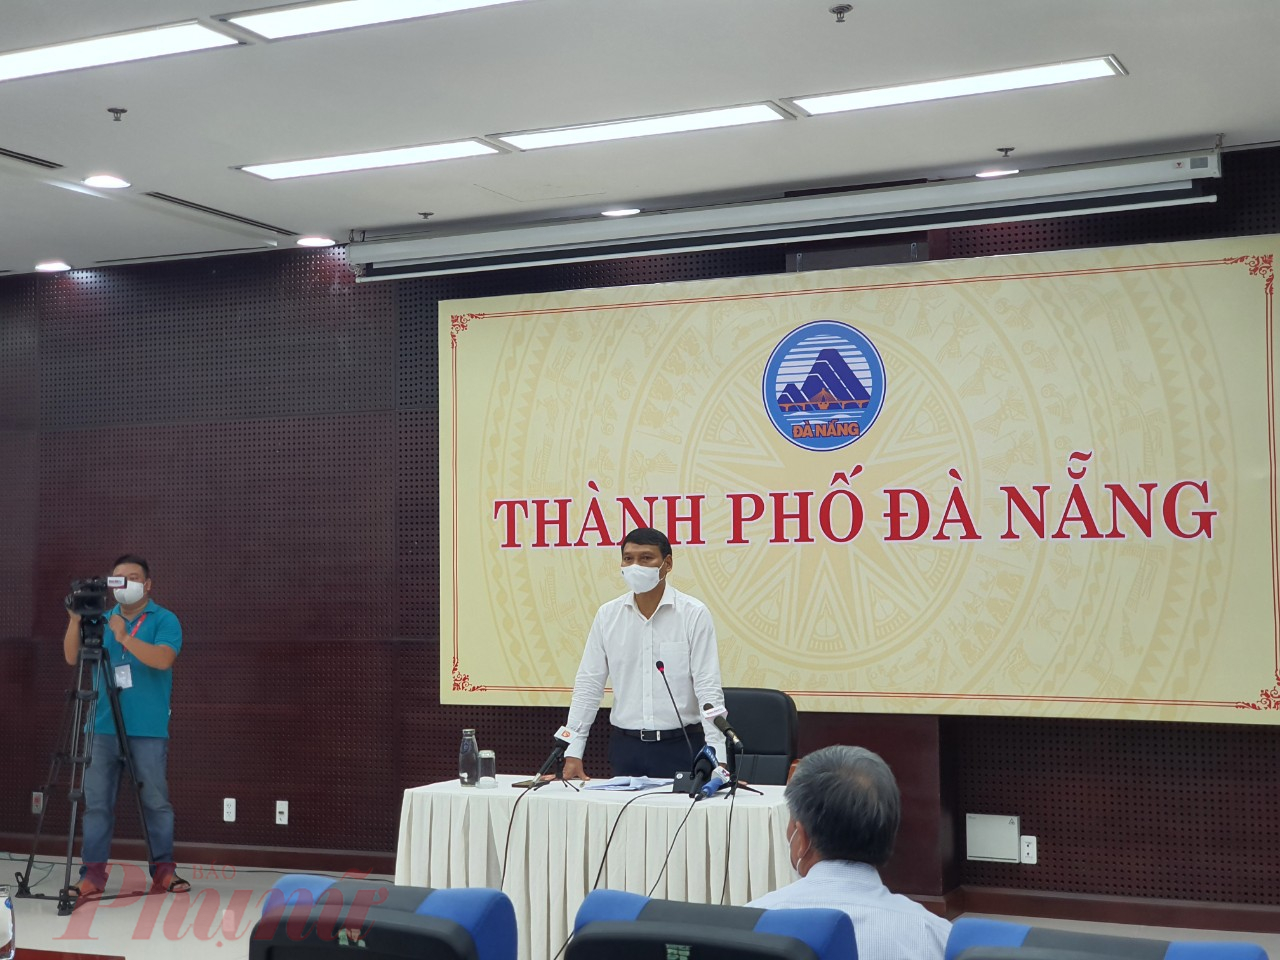 Ông Hồ Kỳ Minh - Phó chủ tịch UBND TP.Đà Nẵng - cho biết ngày mai (25/8), chính quyền Đà Nẵng sẽ ra quyết định cụ thể về biện pháp chống dịch sau 10 ngày phong thành